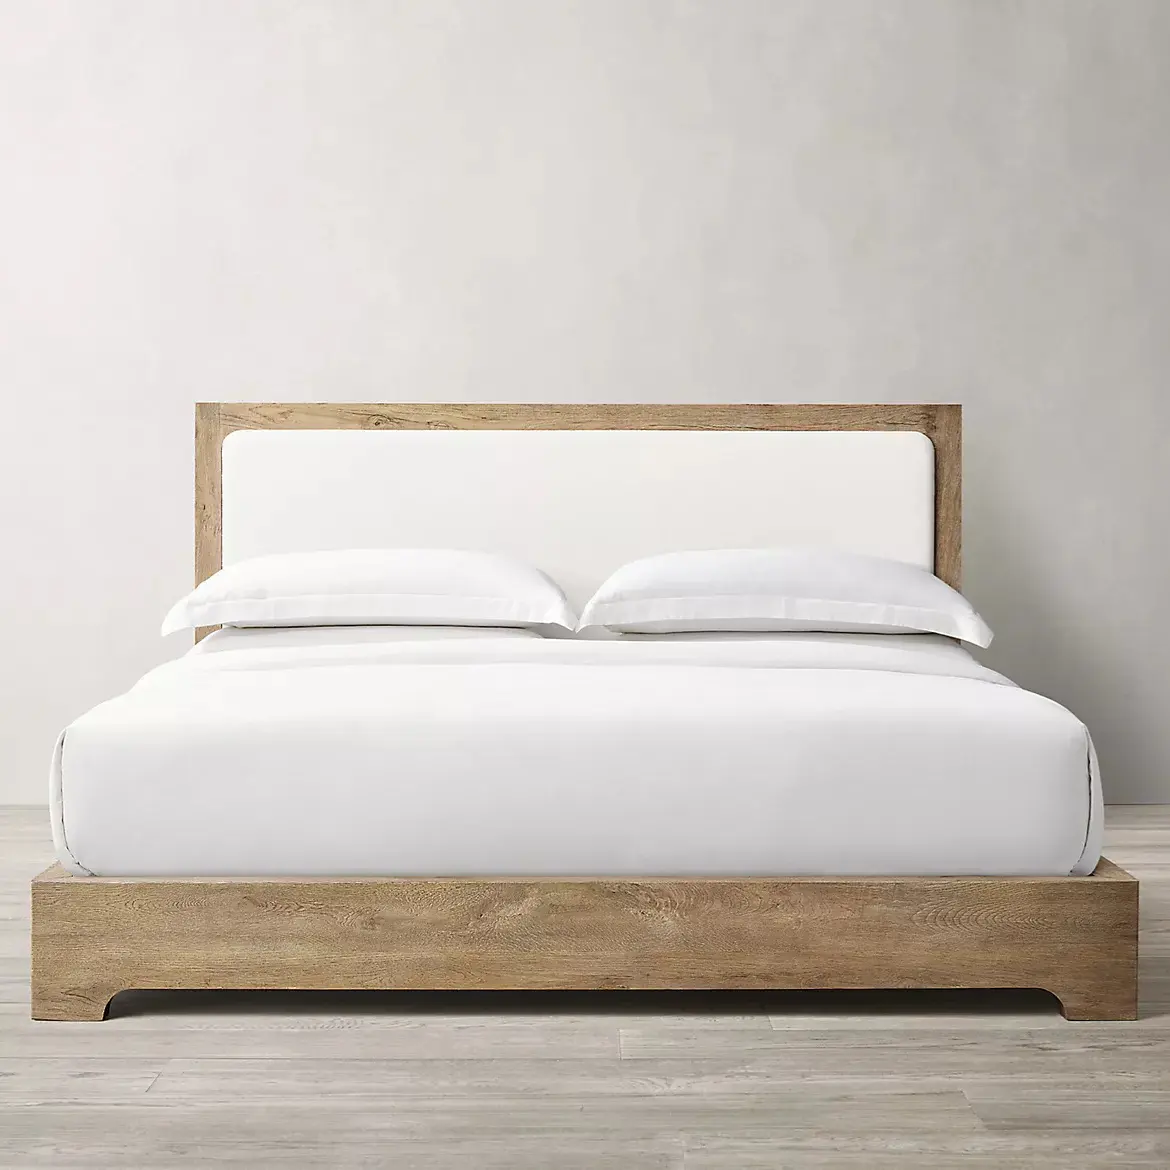 Nature Design Hotel Bedroom set Oak upholstered Panel Bed Latest Slat Support King Size Platform Wooden Bed